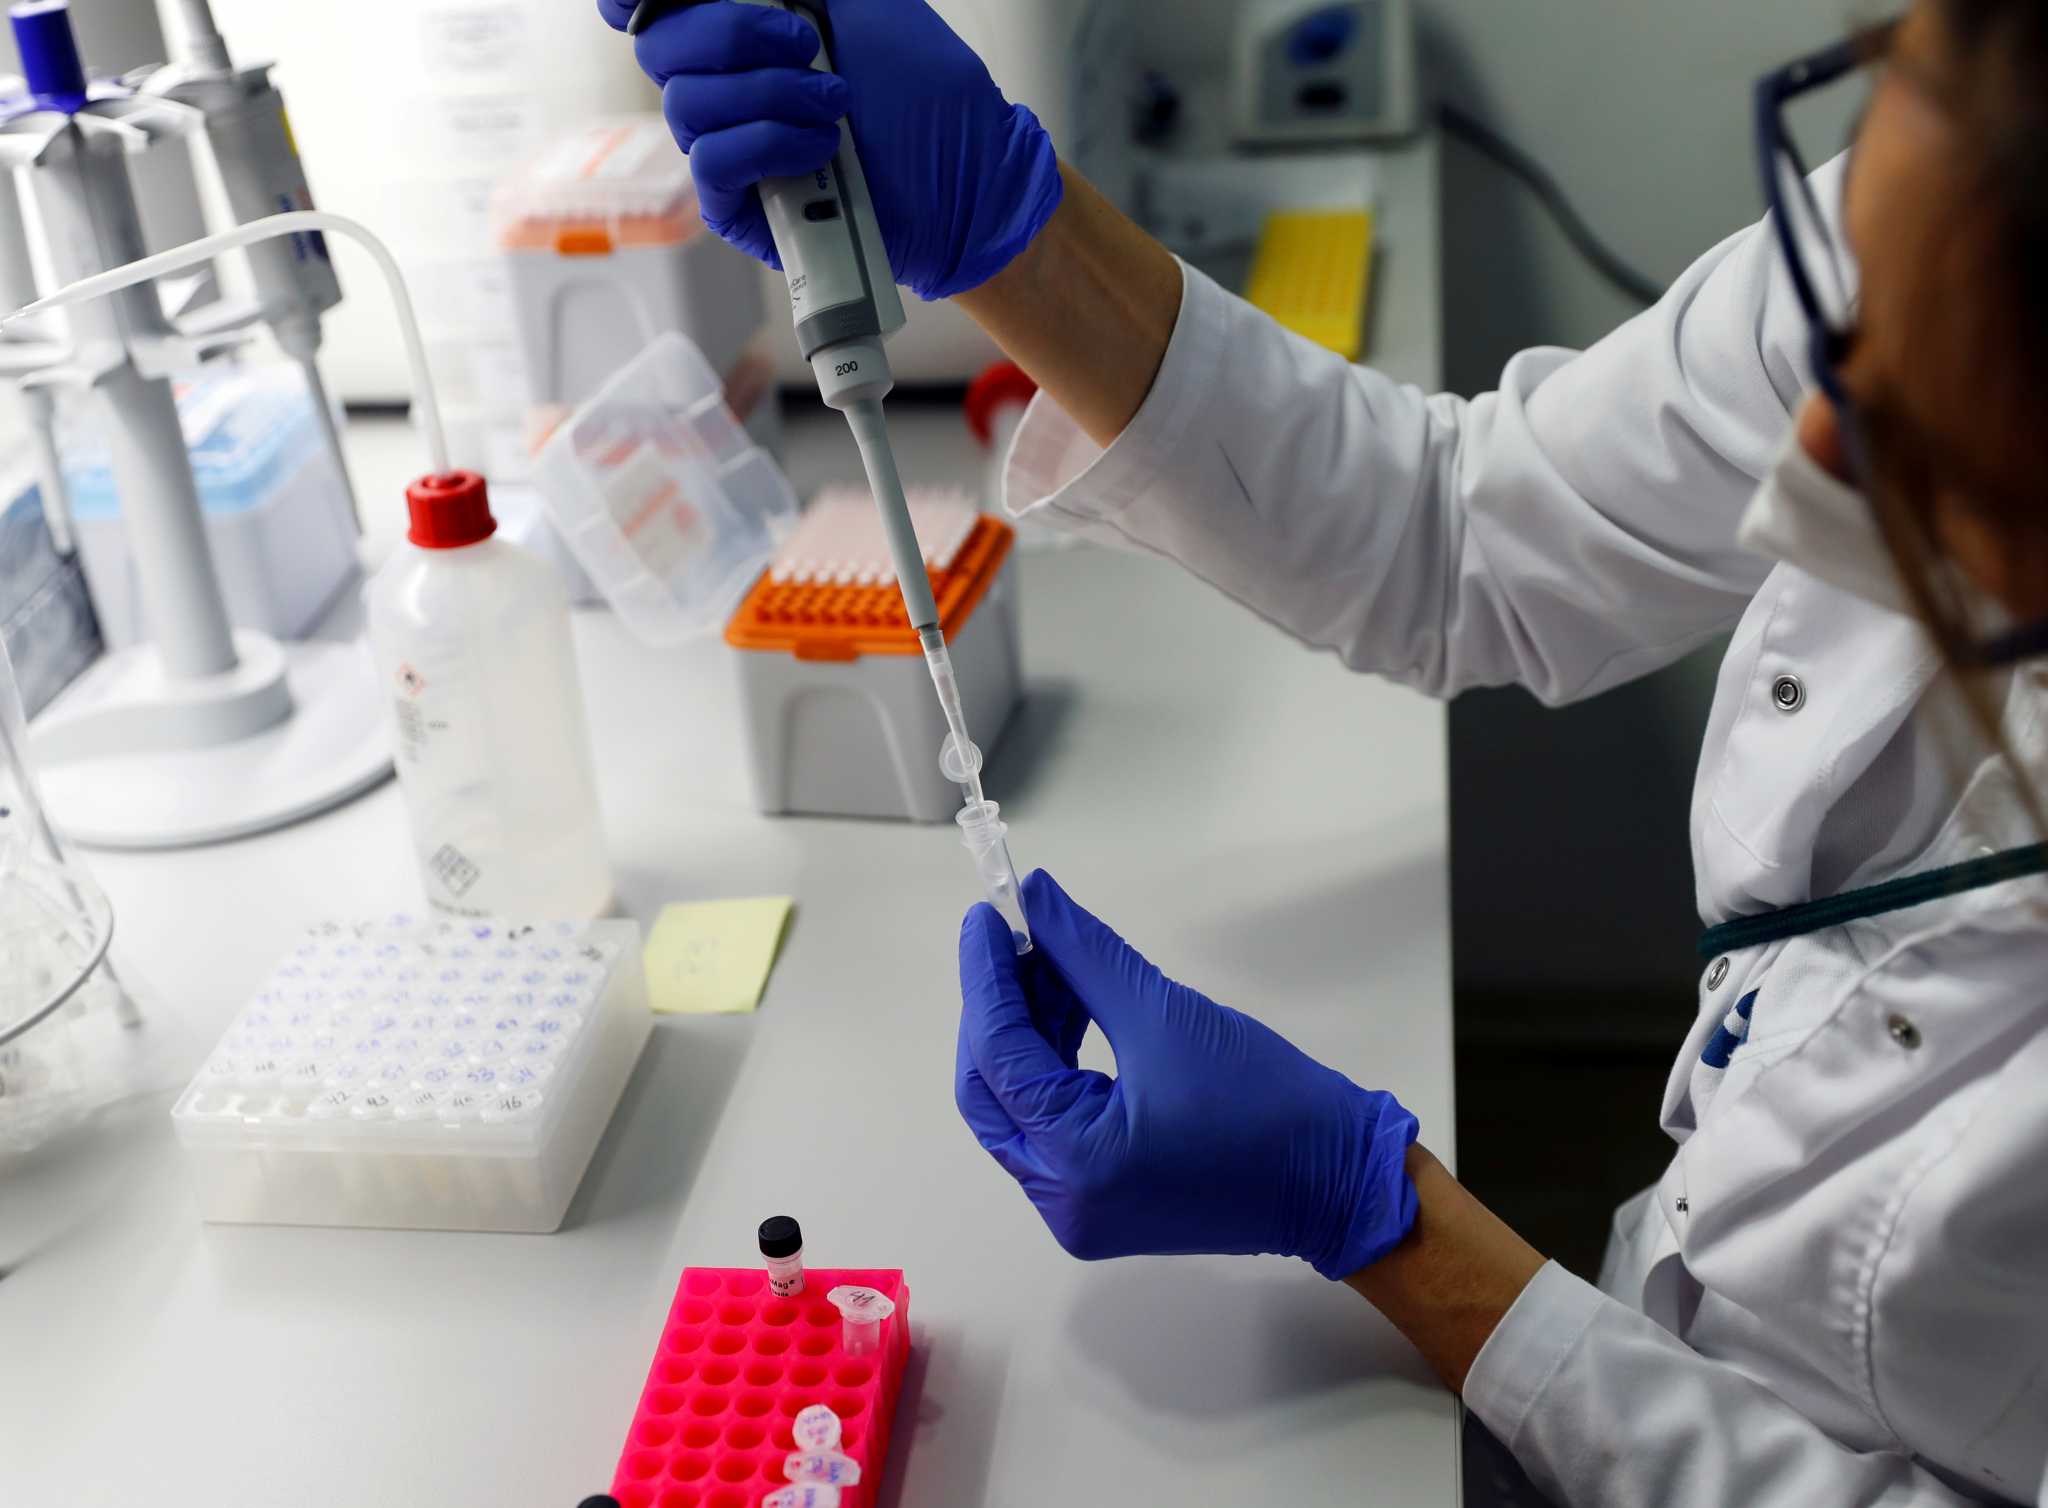 Διαφωνούν οι γιατροί με τη μείωση τιμής του PCR: “Κίνδυνοι για την αξιοπιστία των τεστ